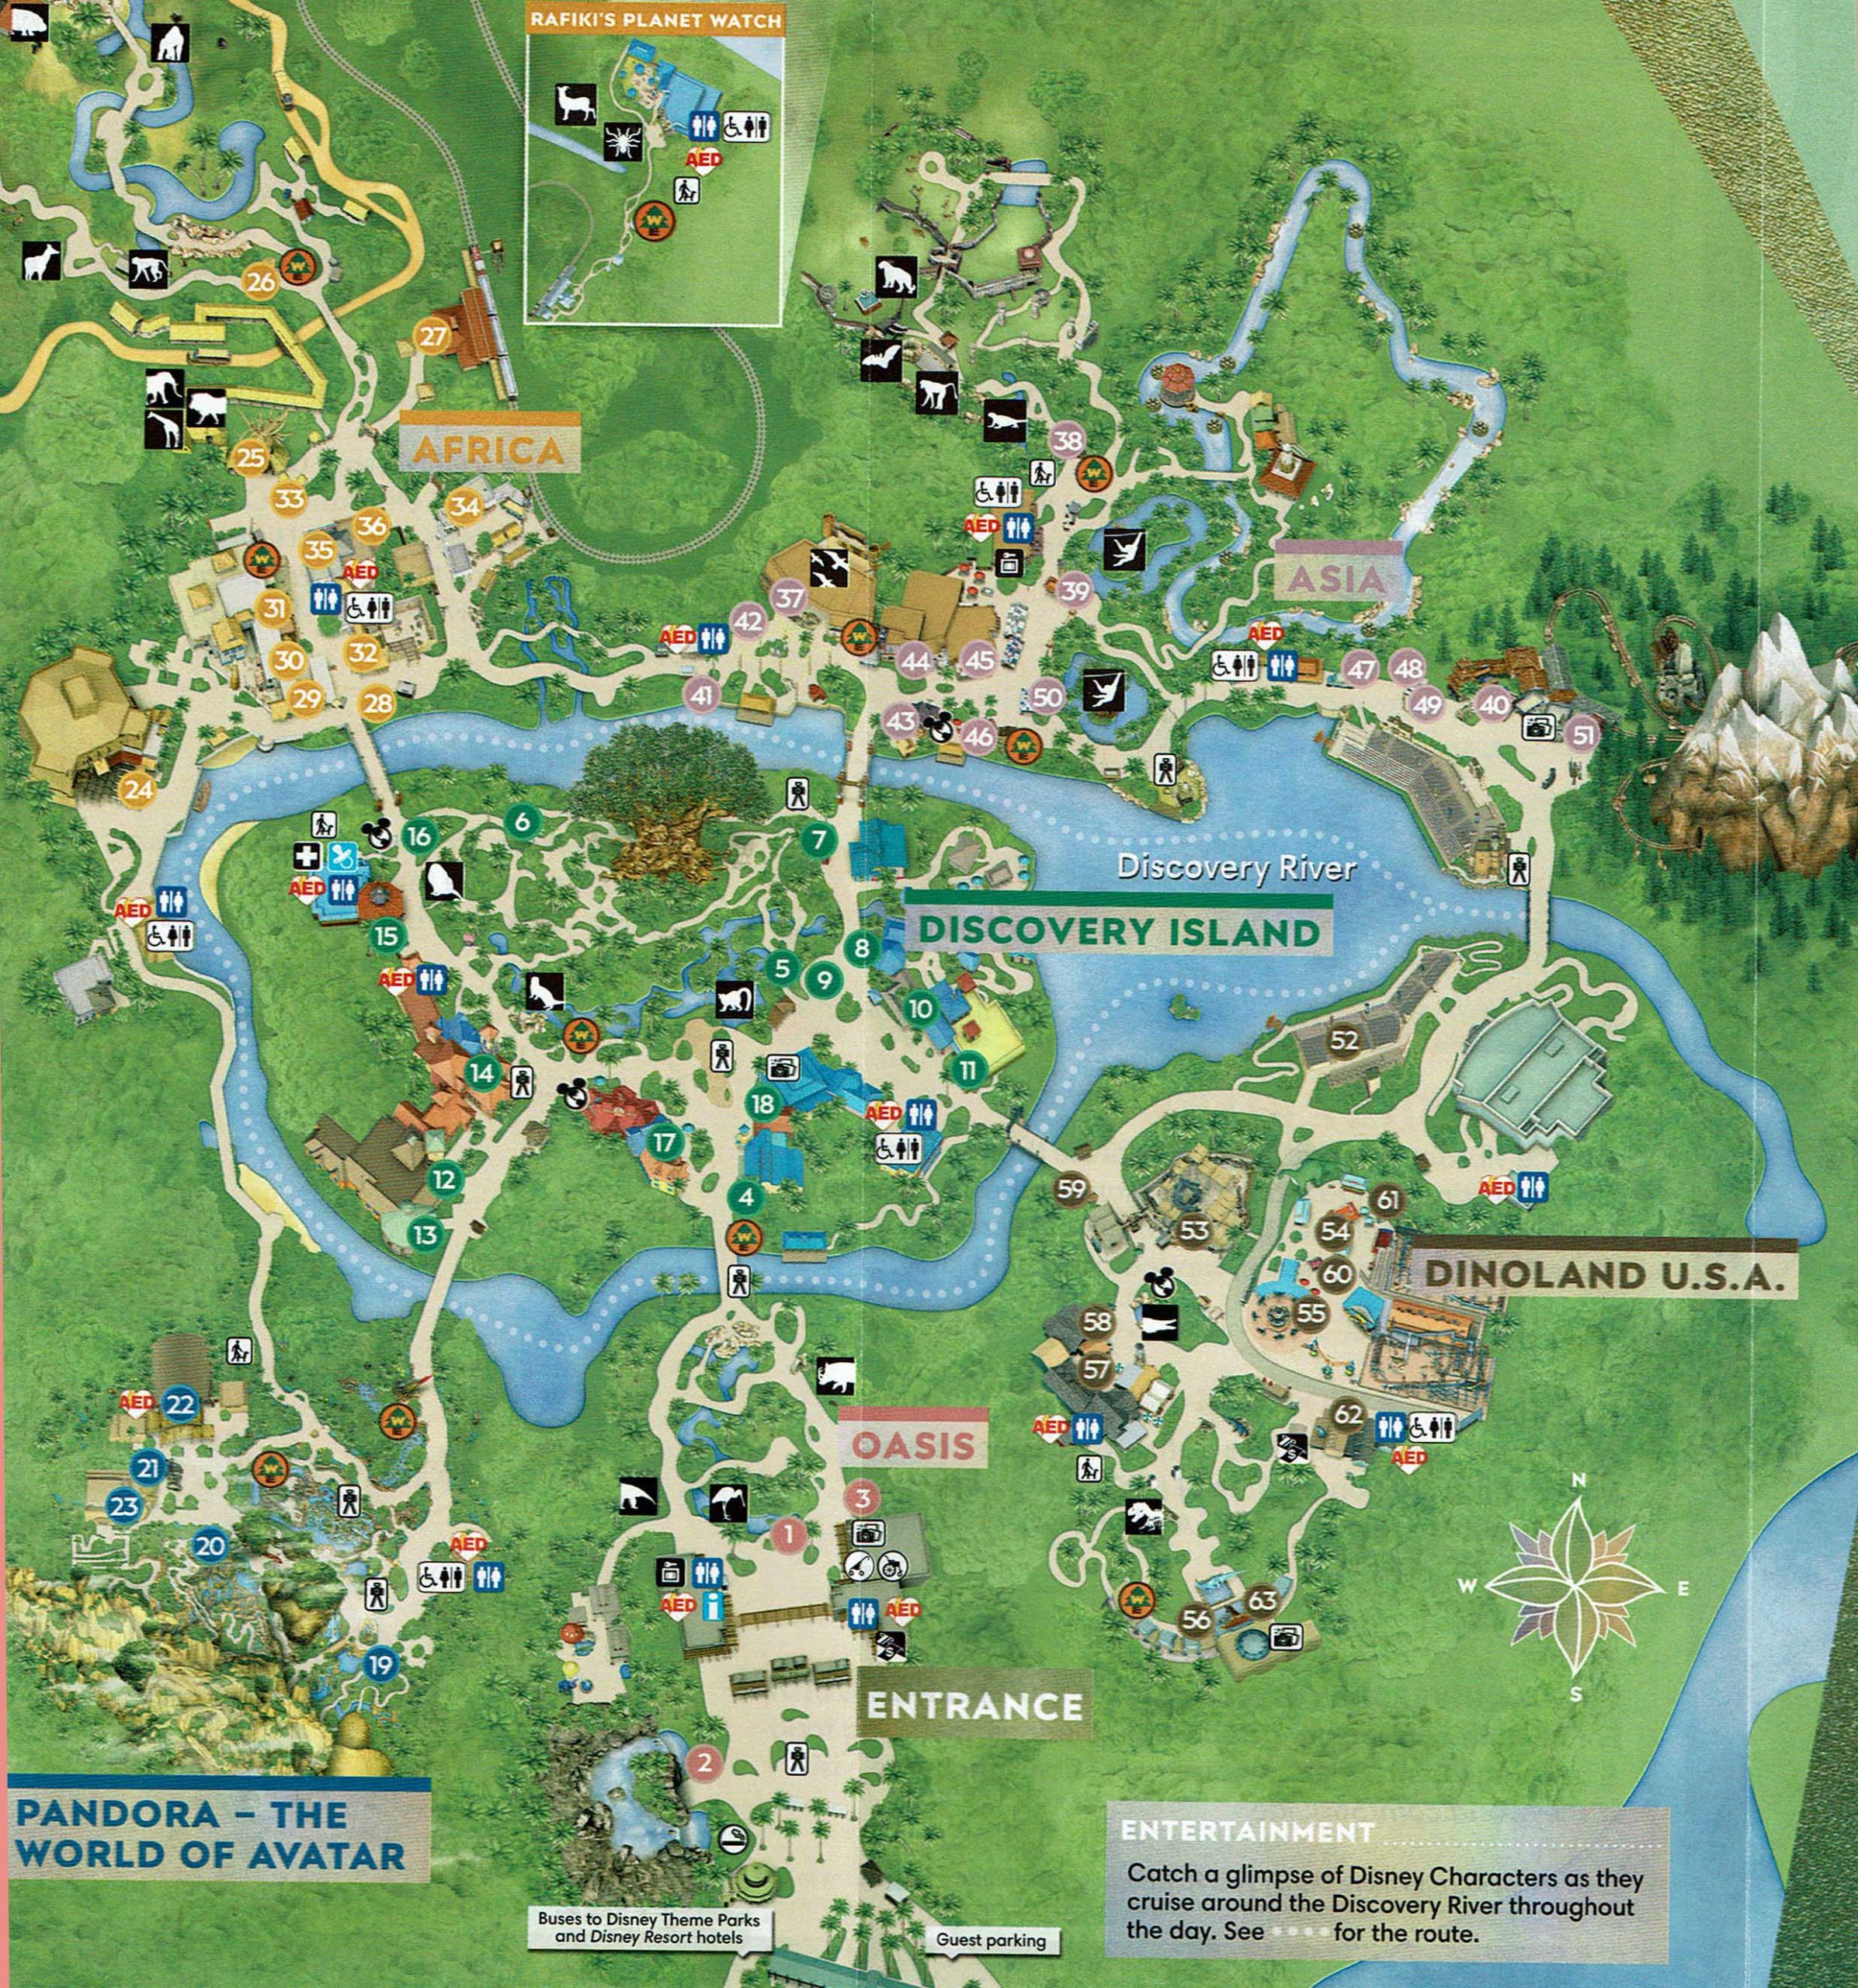 Disney-World-Animal-Kingdom-Map-Large-scaled.jpg